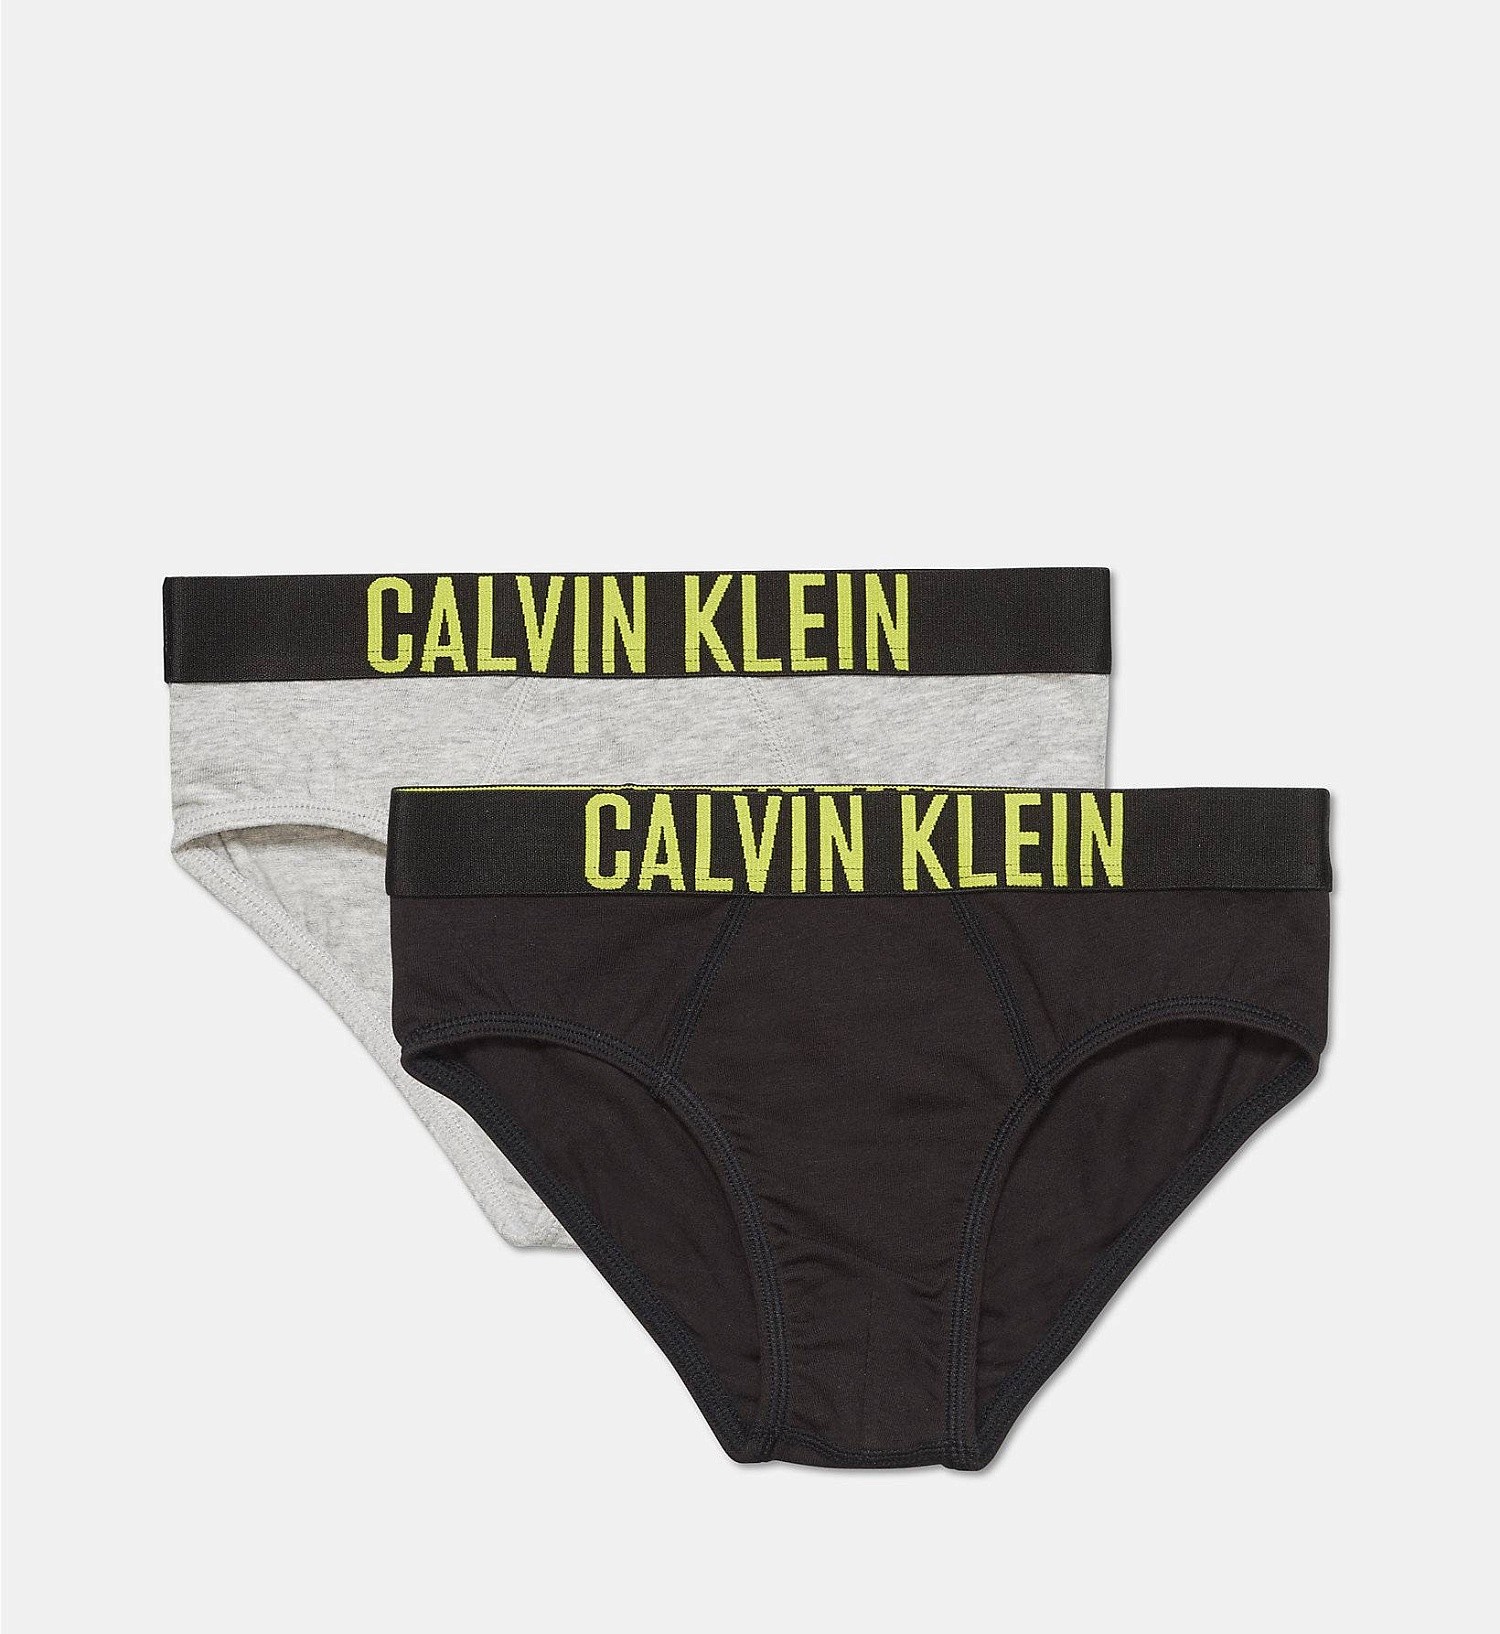 Трусы для мальчиков Calvin Klein - упаковка 2 шт. B70B700113 - купить с доставкой по Москве, России, оплата при получении